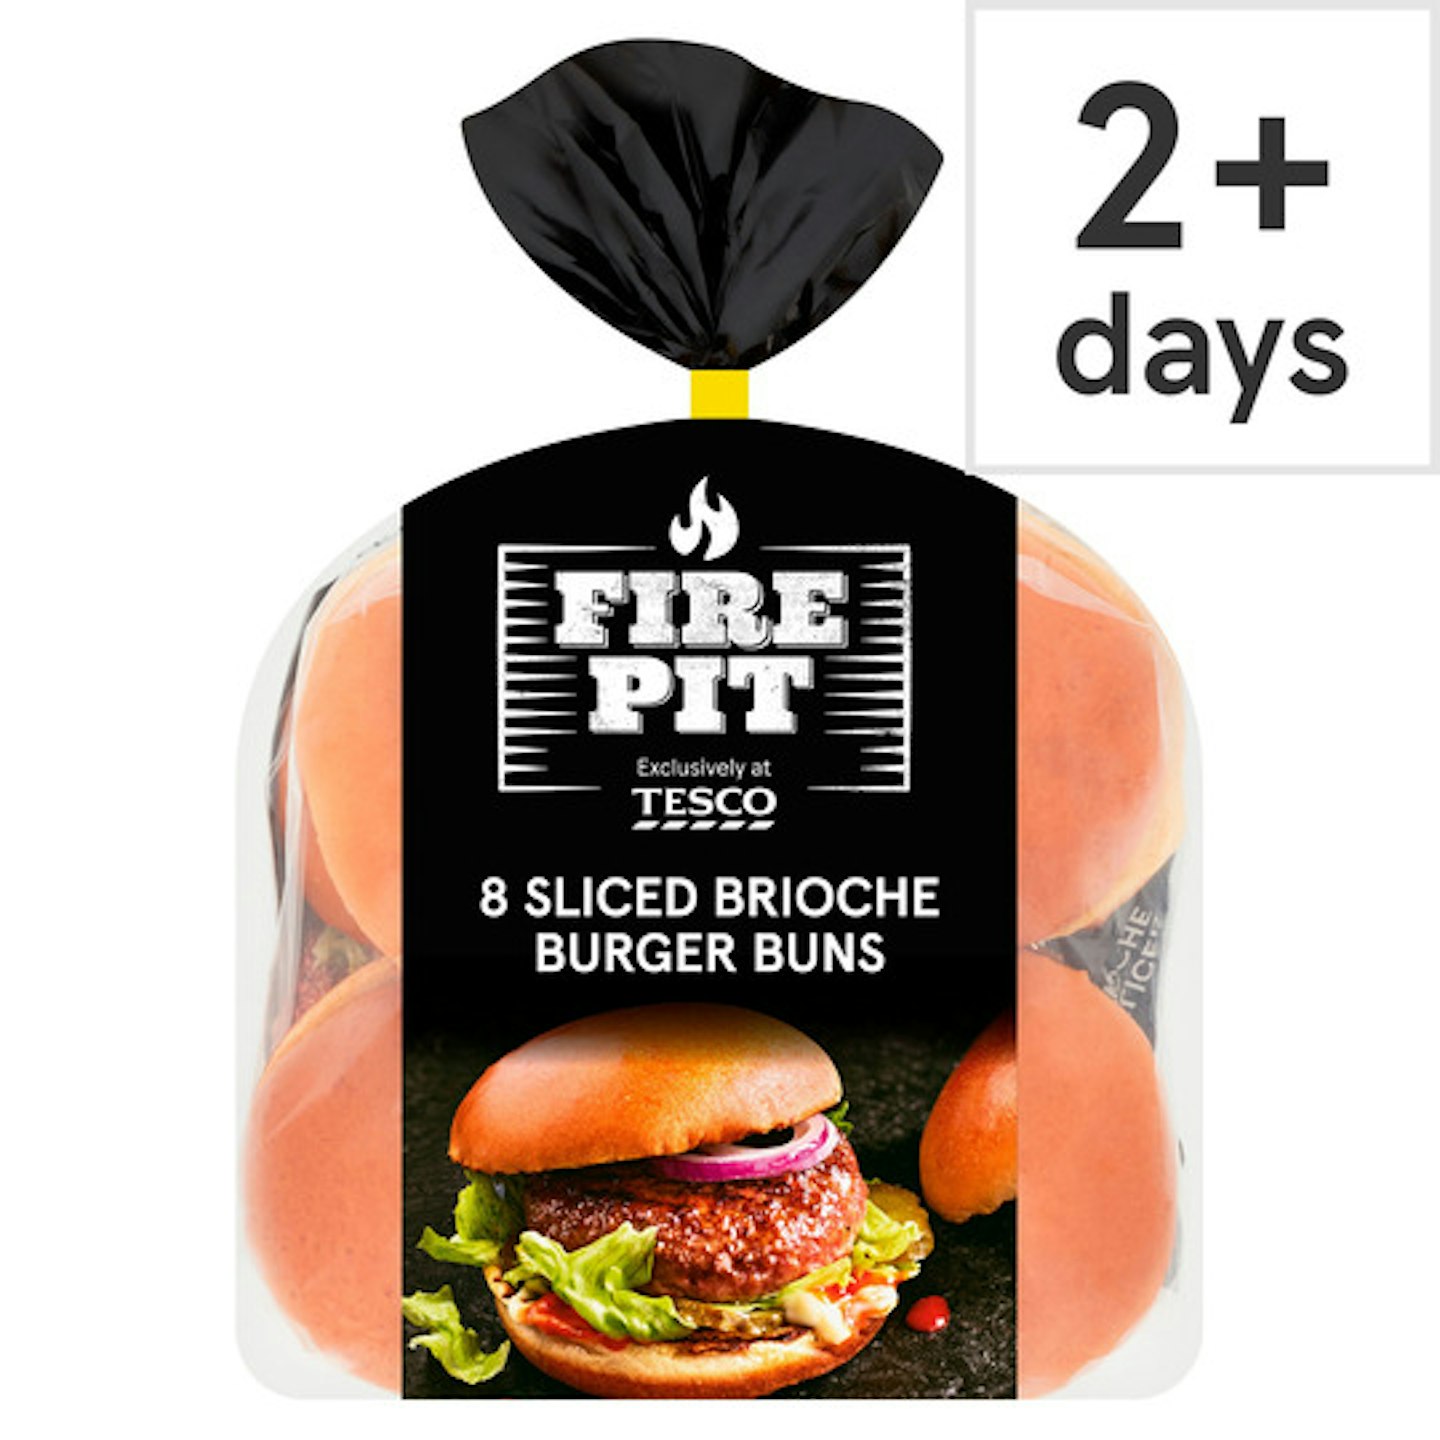 Tesco Fire Pit 8 Sliced Brioche Burger Buns